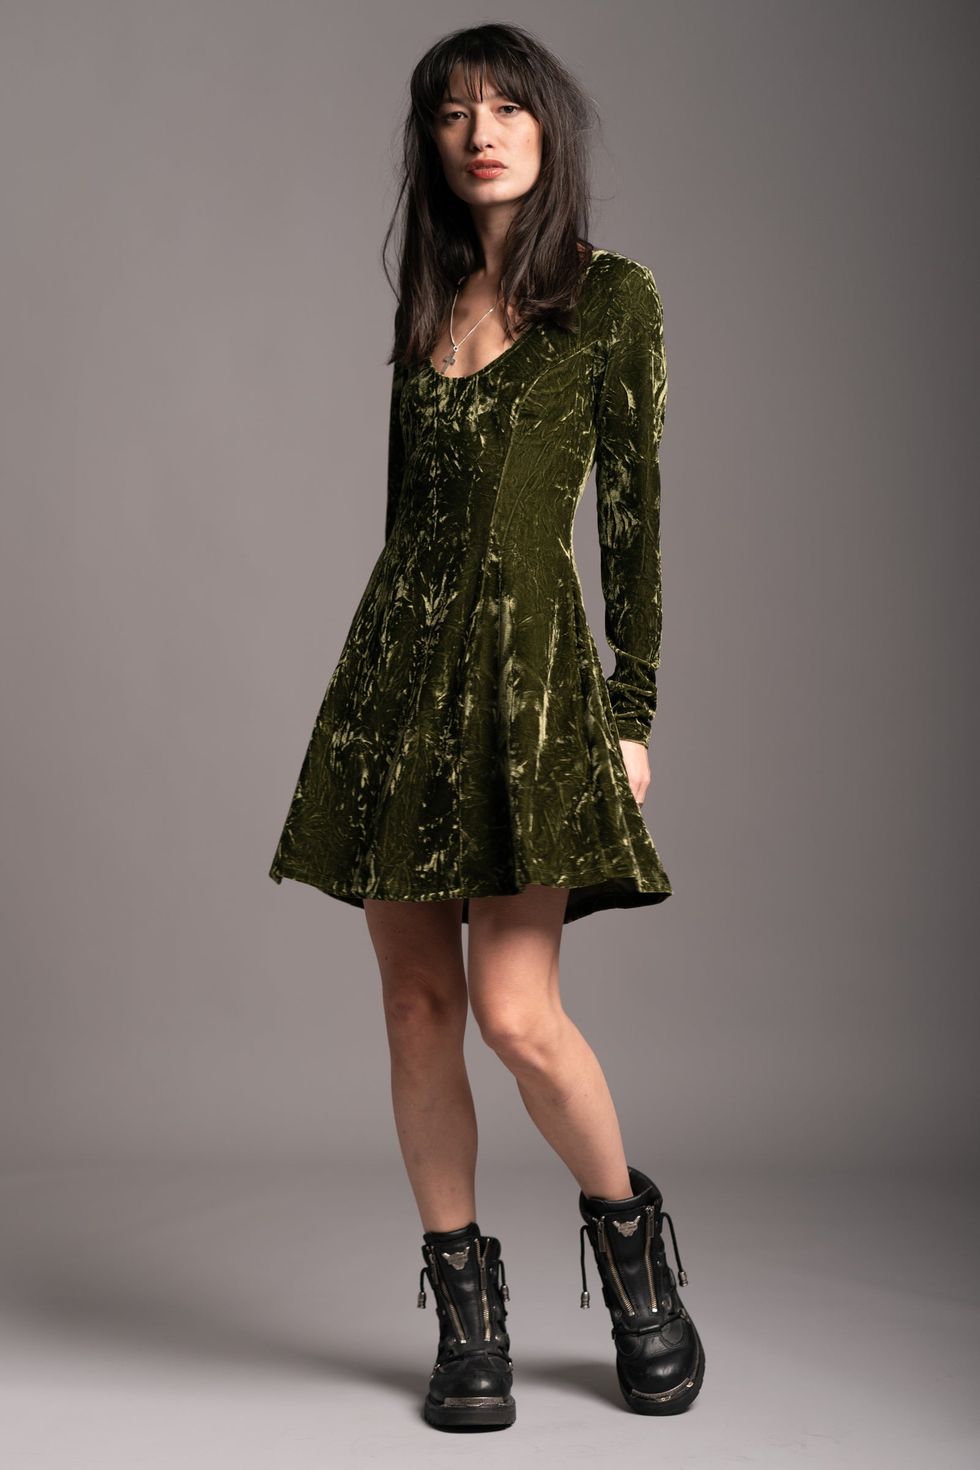 Here's Where to Buy Taylor Swift's Green Velvet Dress